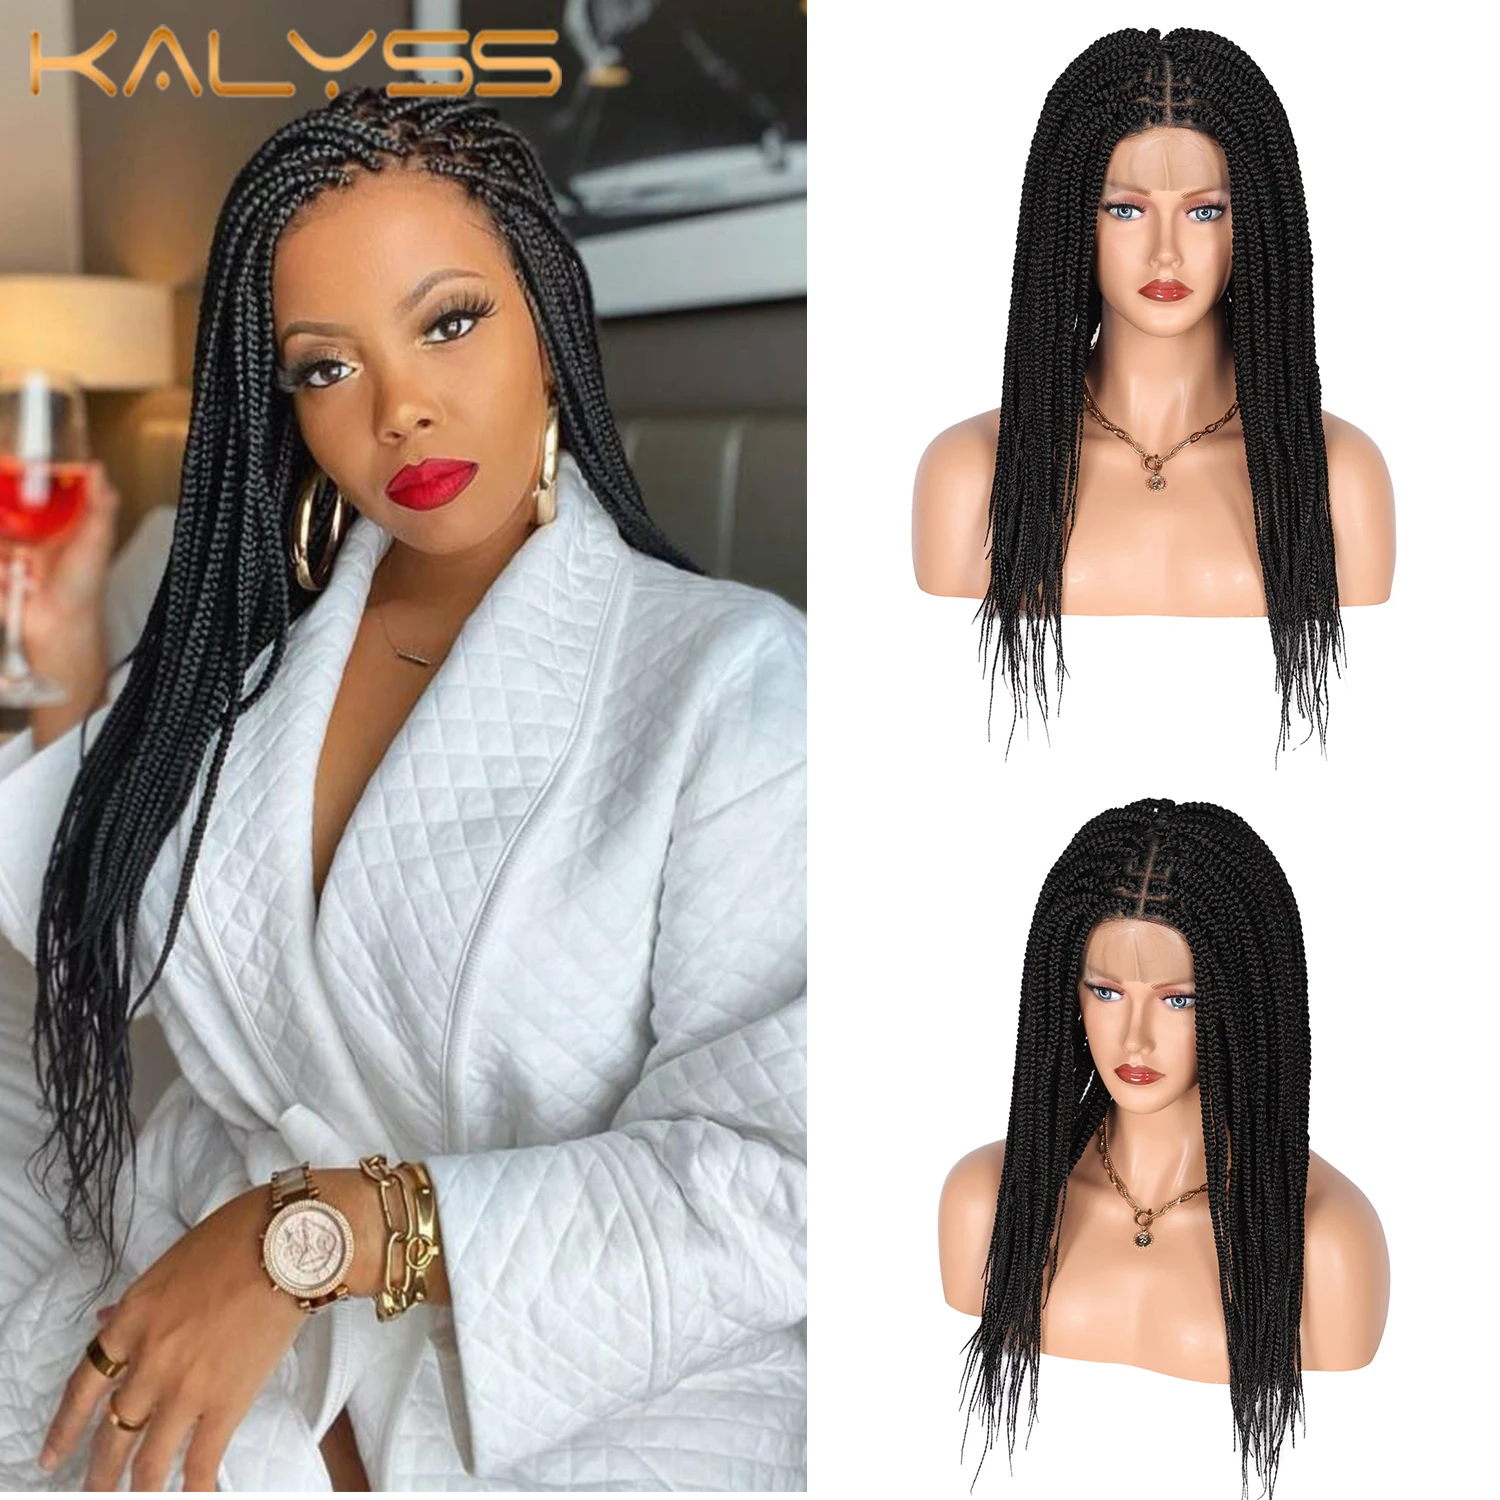 

Kalyss 24 дюйма 360 полный кружевной передний Плетеный женский синтетический парик без узлов в коробке для черных женщин